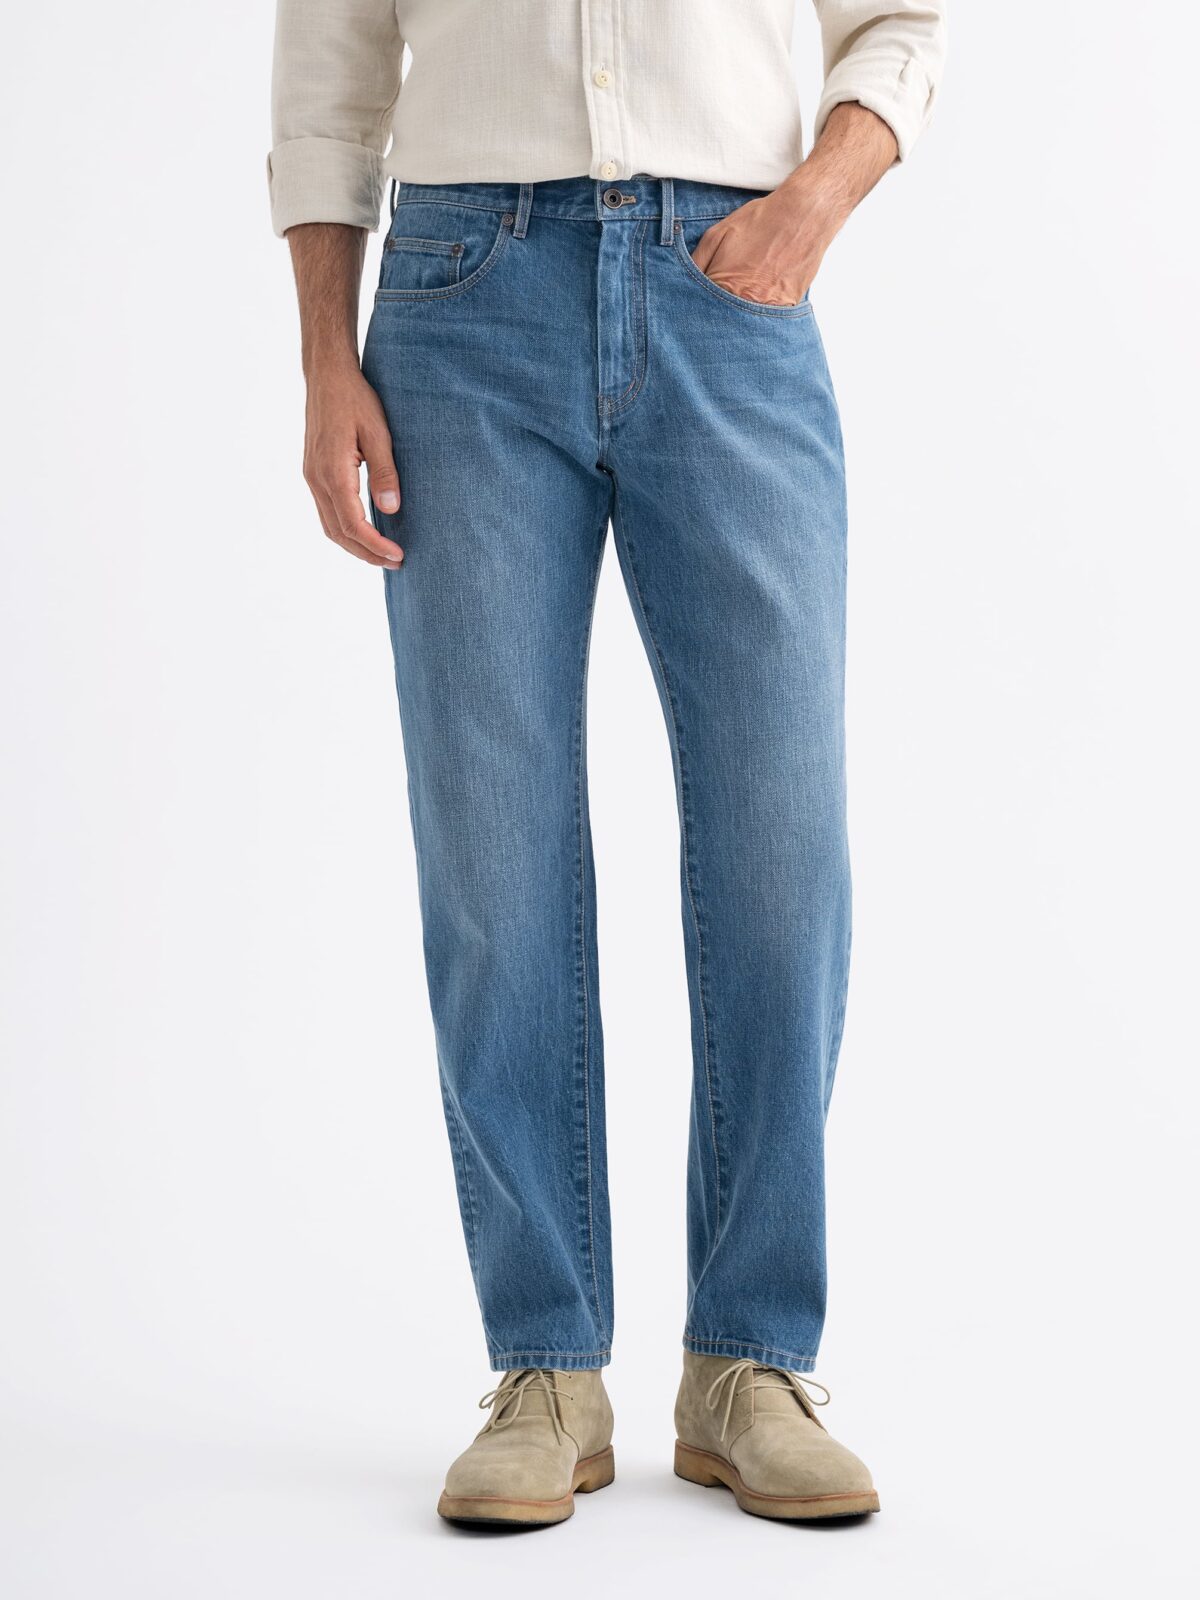 Levi's Men's 501 Original Fit Jeans (Discontinued), Cocktails for